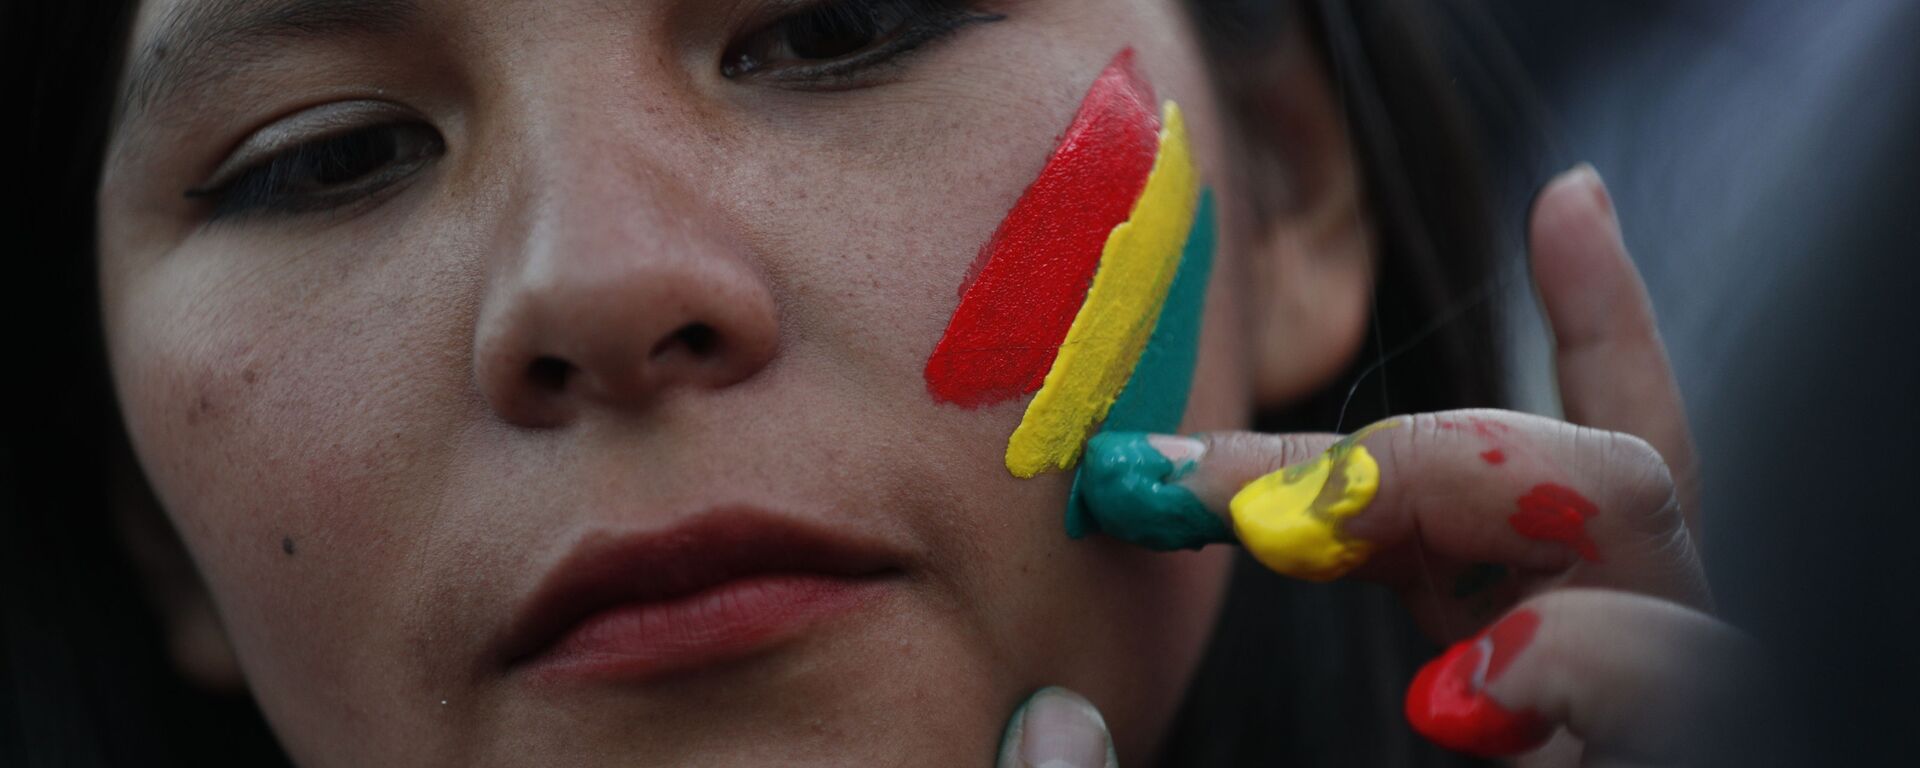 Una mujer pinta los colores de la bandera boliviana en su rostro - Sputnik Mundo, 1920, 06.03.2021